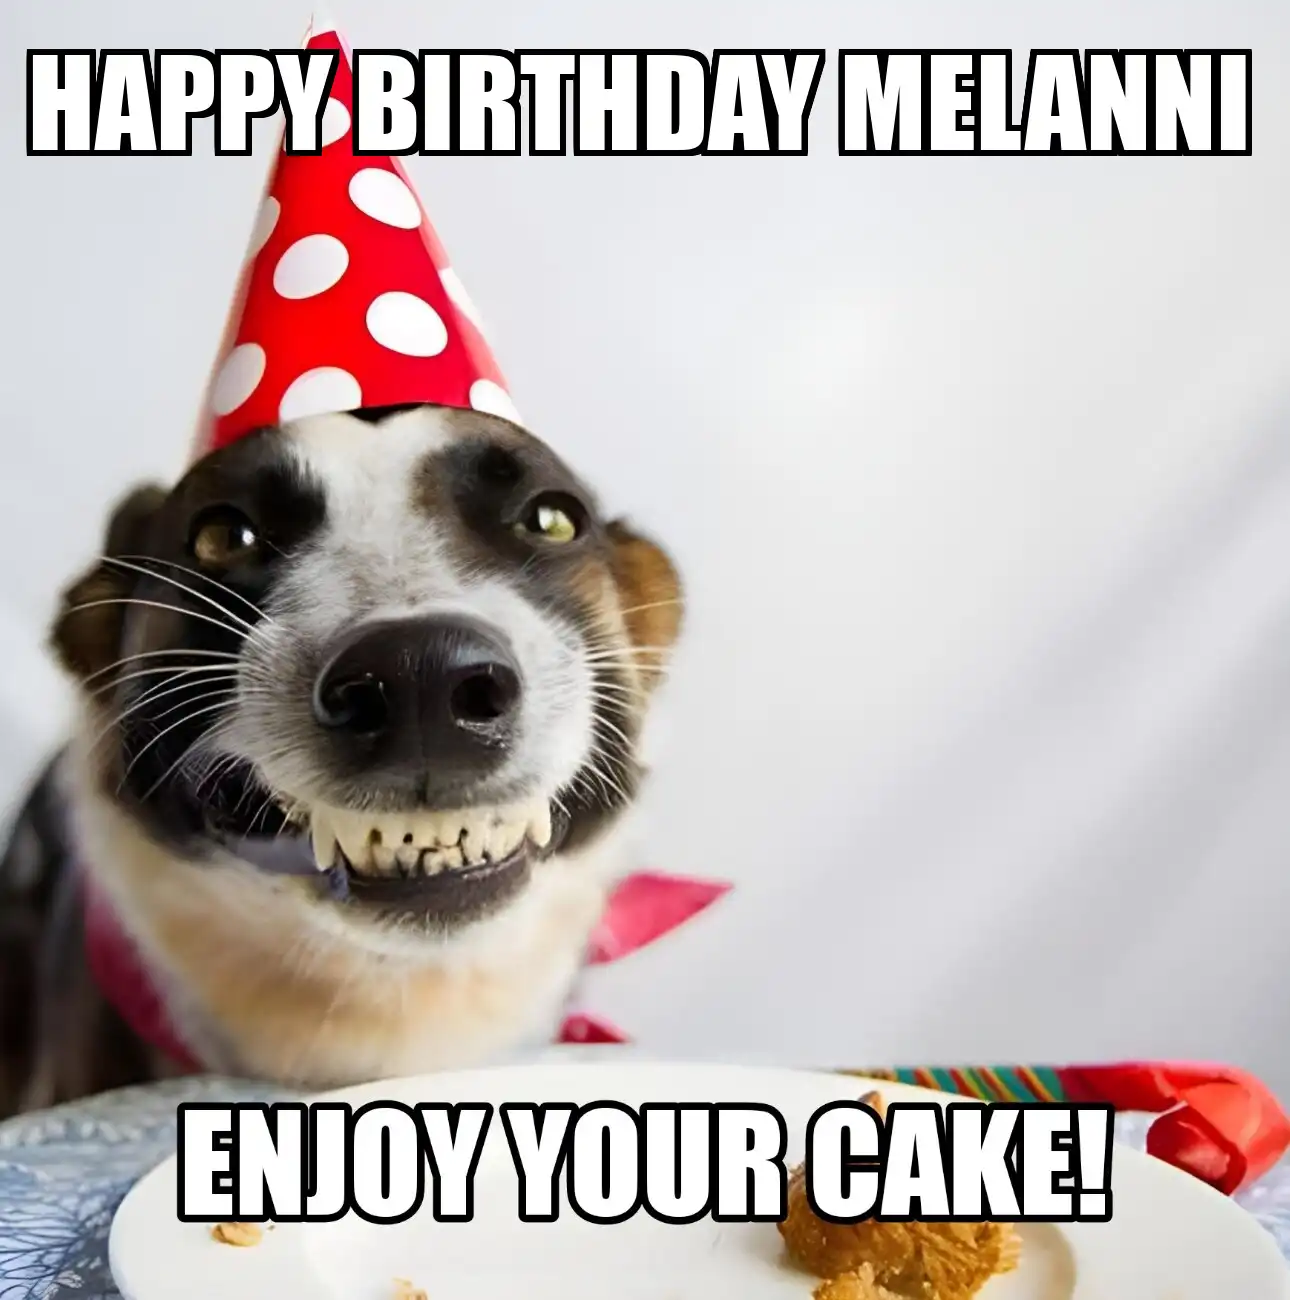 Happy Birthday Melanni Enjoy Your Cake Dog Meme